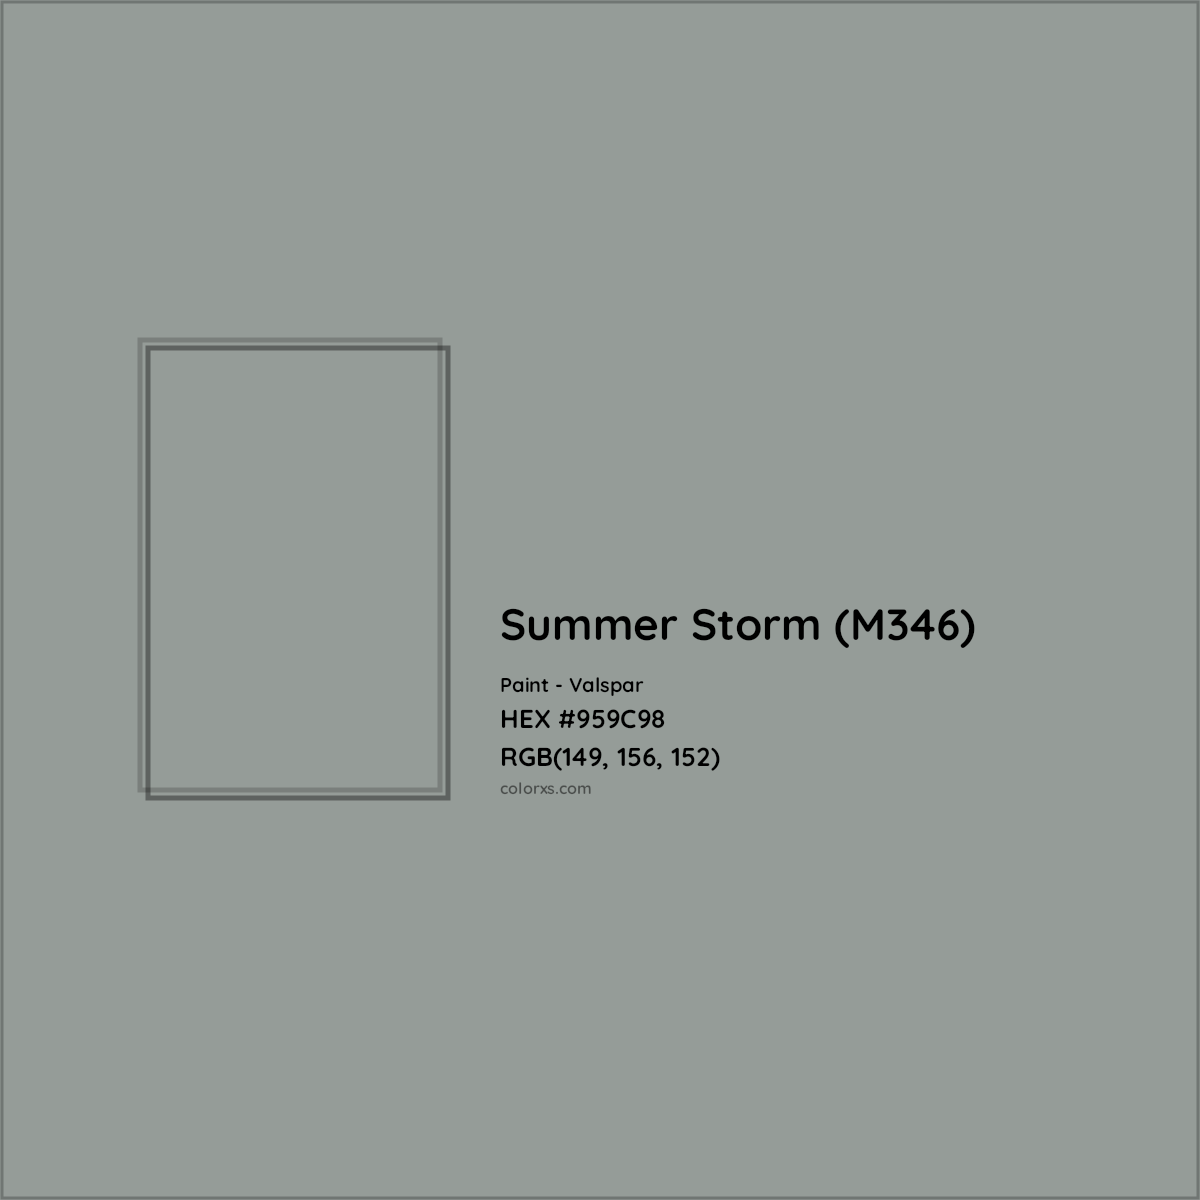 HEX #959C98 Summer Storm (M346) Paint Valspar - Color Code